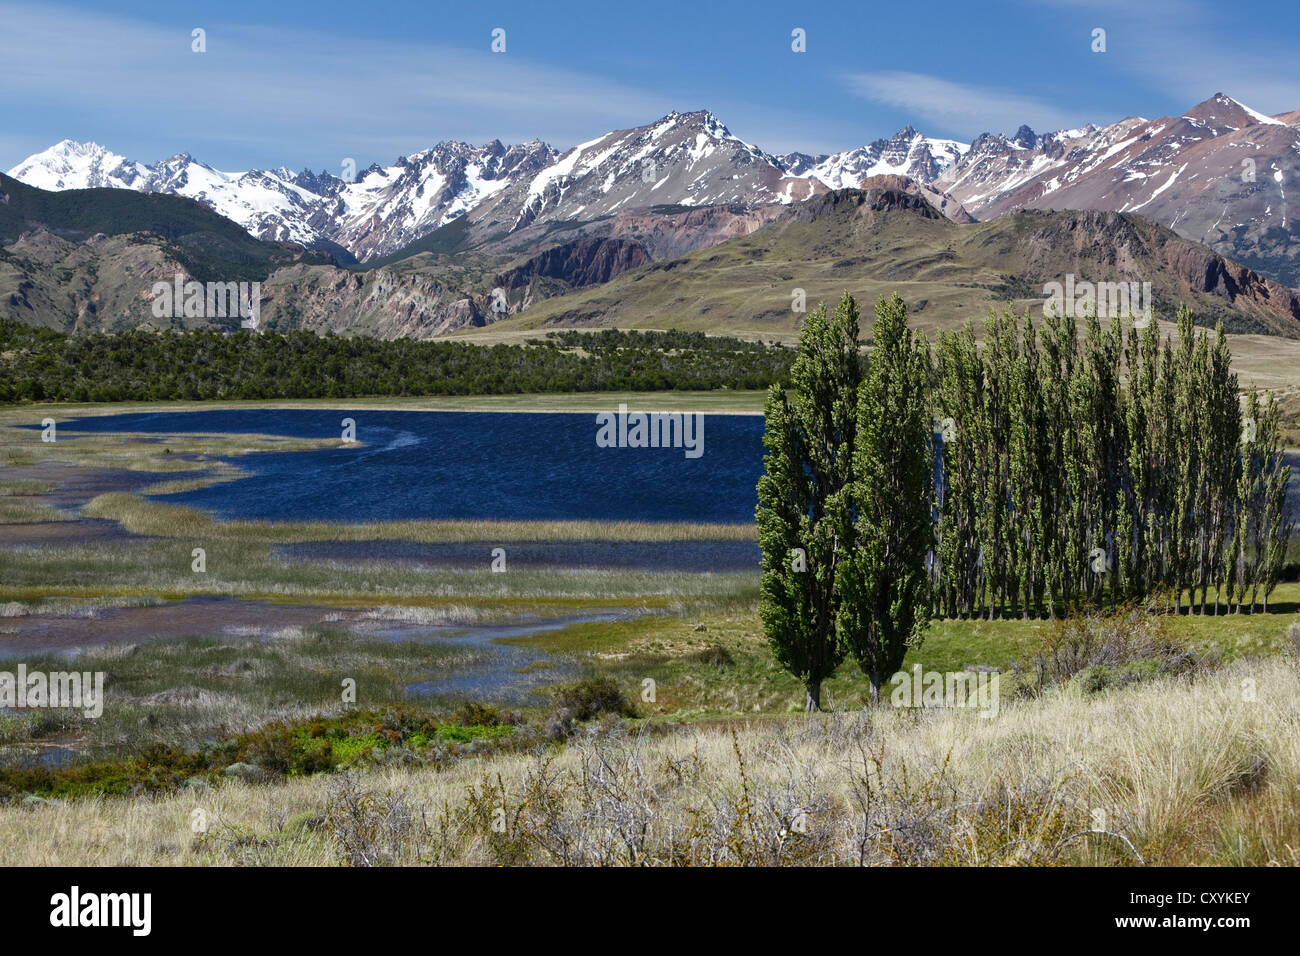 Pappeln, die chilenischen Anden auf der Rückseite, am Fluss Rio Chacabuco, Cochrane, Region de Aysen, Patagonien, Chile, Südamerika Stockfoto